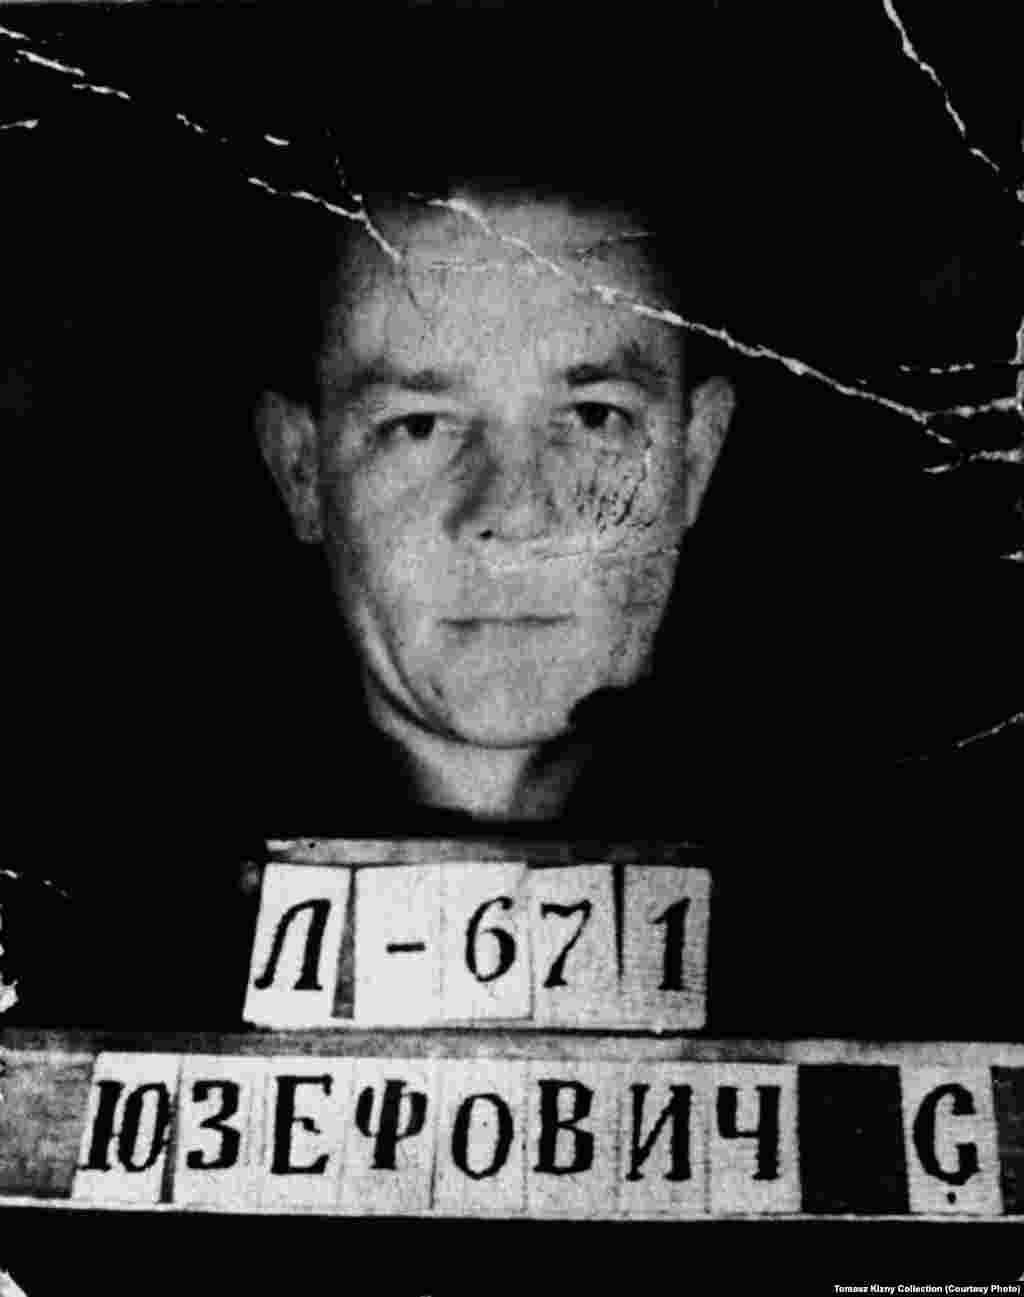 Poljski vojnik Šefan Jozefovič, kojeg je uhapsila sovjetska tajna policija i osudila na smrt. Kasnije je presuda promijenjena u 20 godina rada u gulagu. Jozefovič učestvuje u štrajku zatvorenika, 1956. vraća se u Poljsku. 